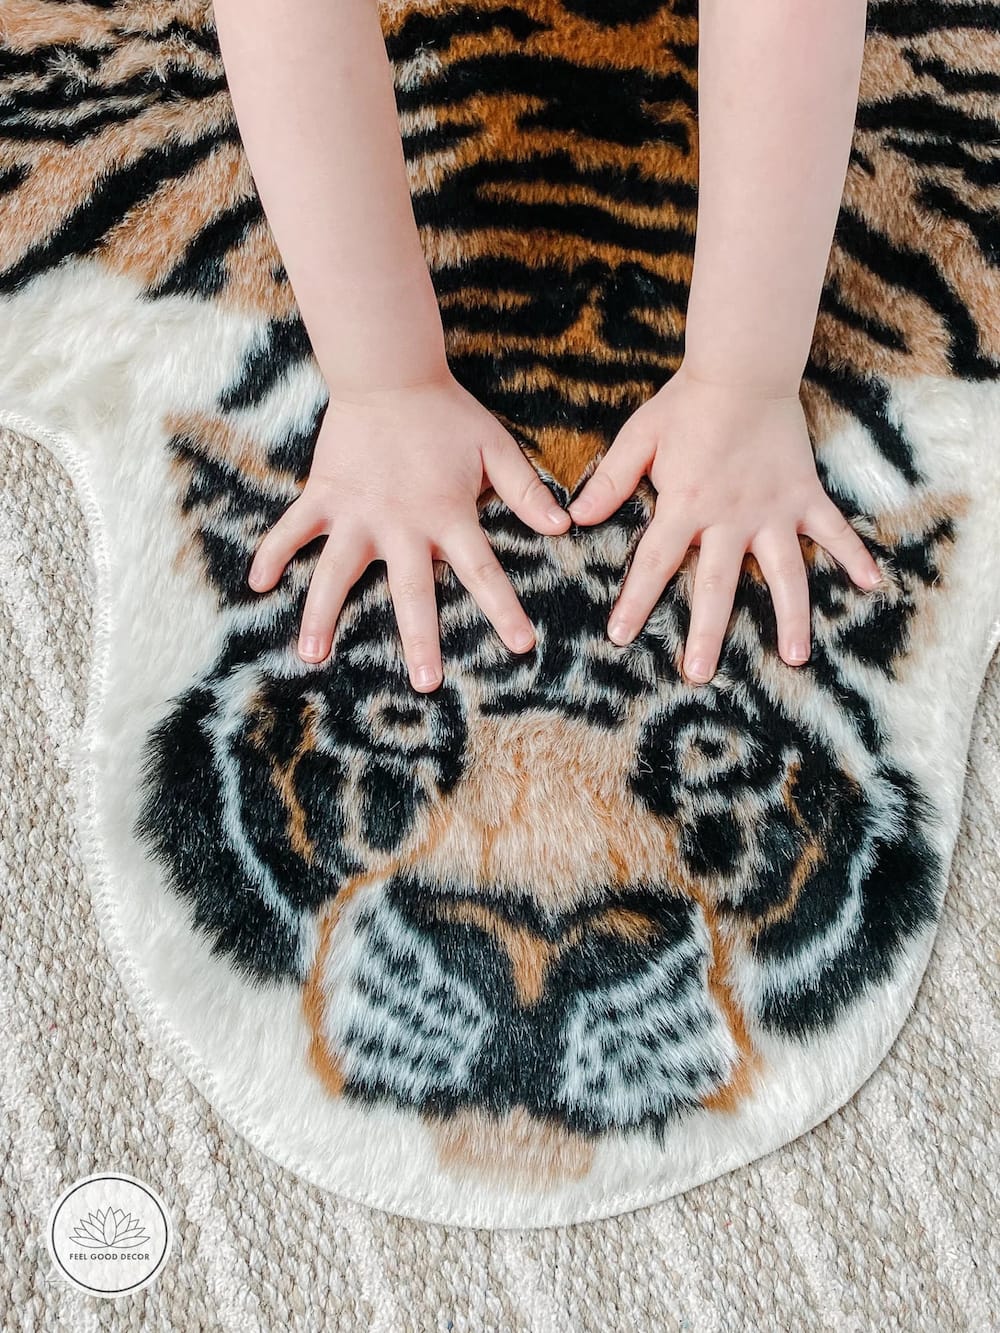 Mustard Yellow Ginkgo Leaf Quilted Floor Mat | Cat Dog Pet Floor Mat | Kids  Nursery Play Mat